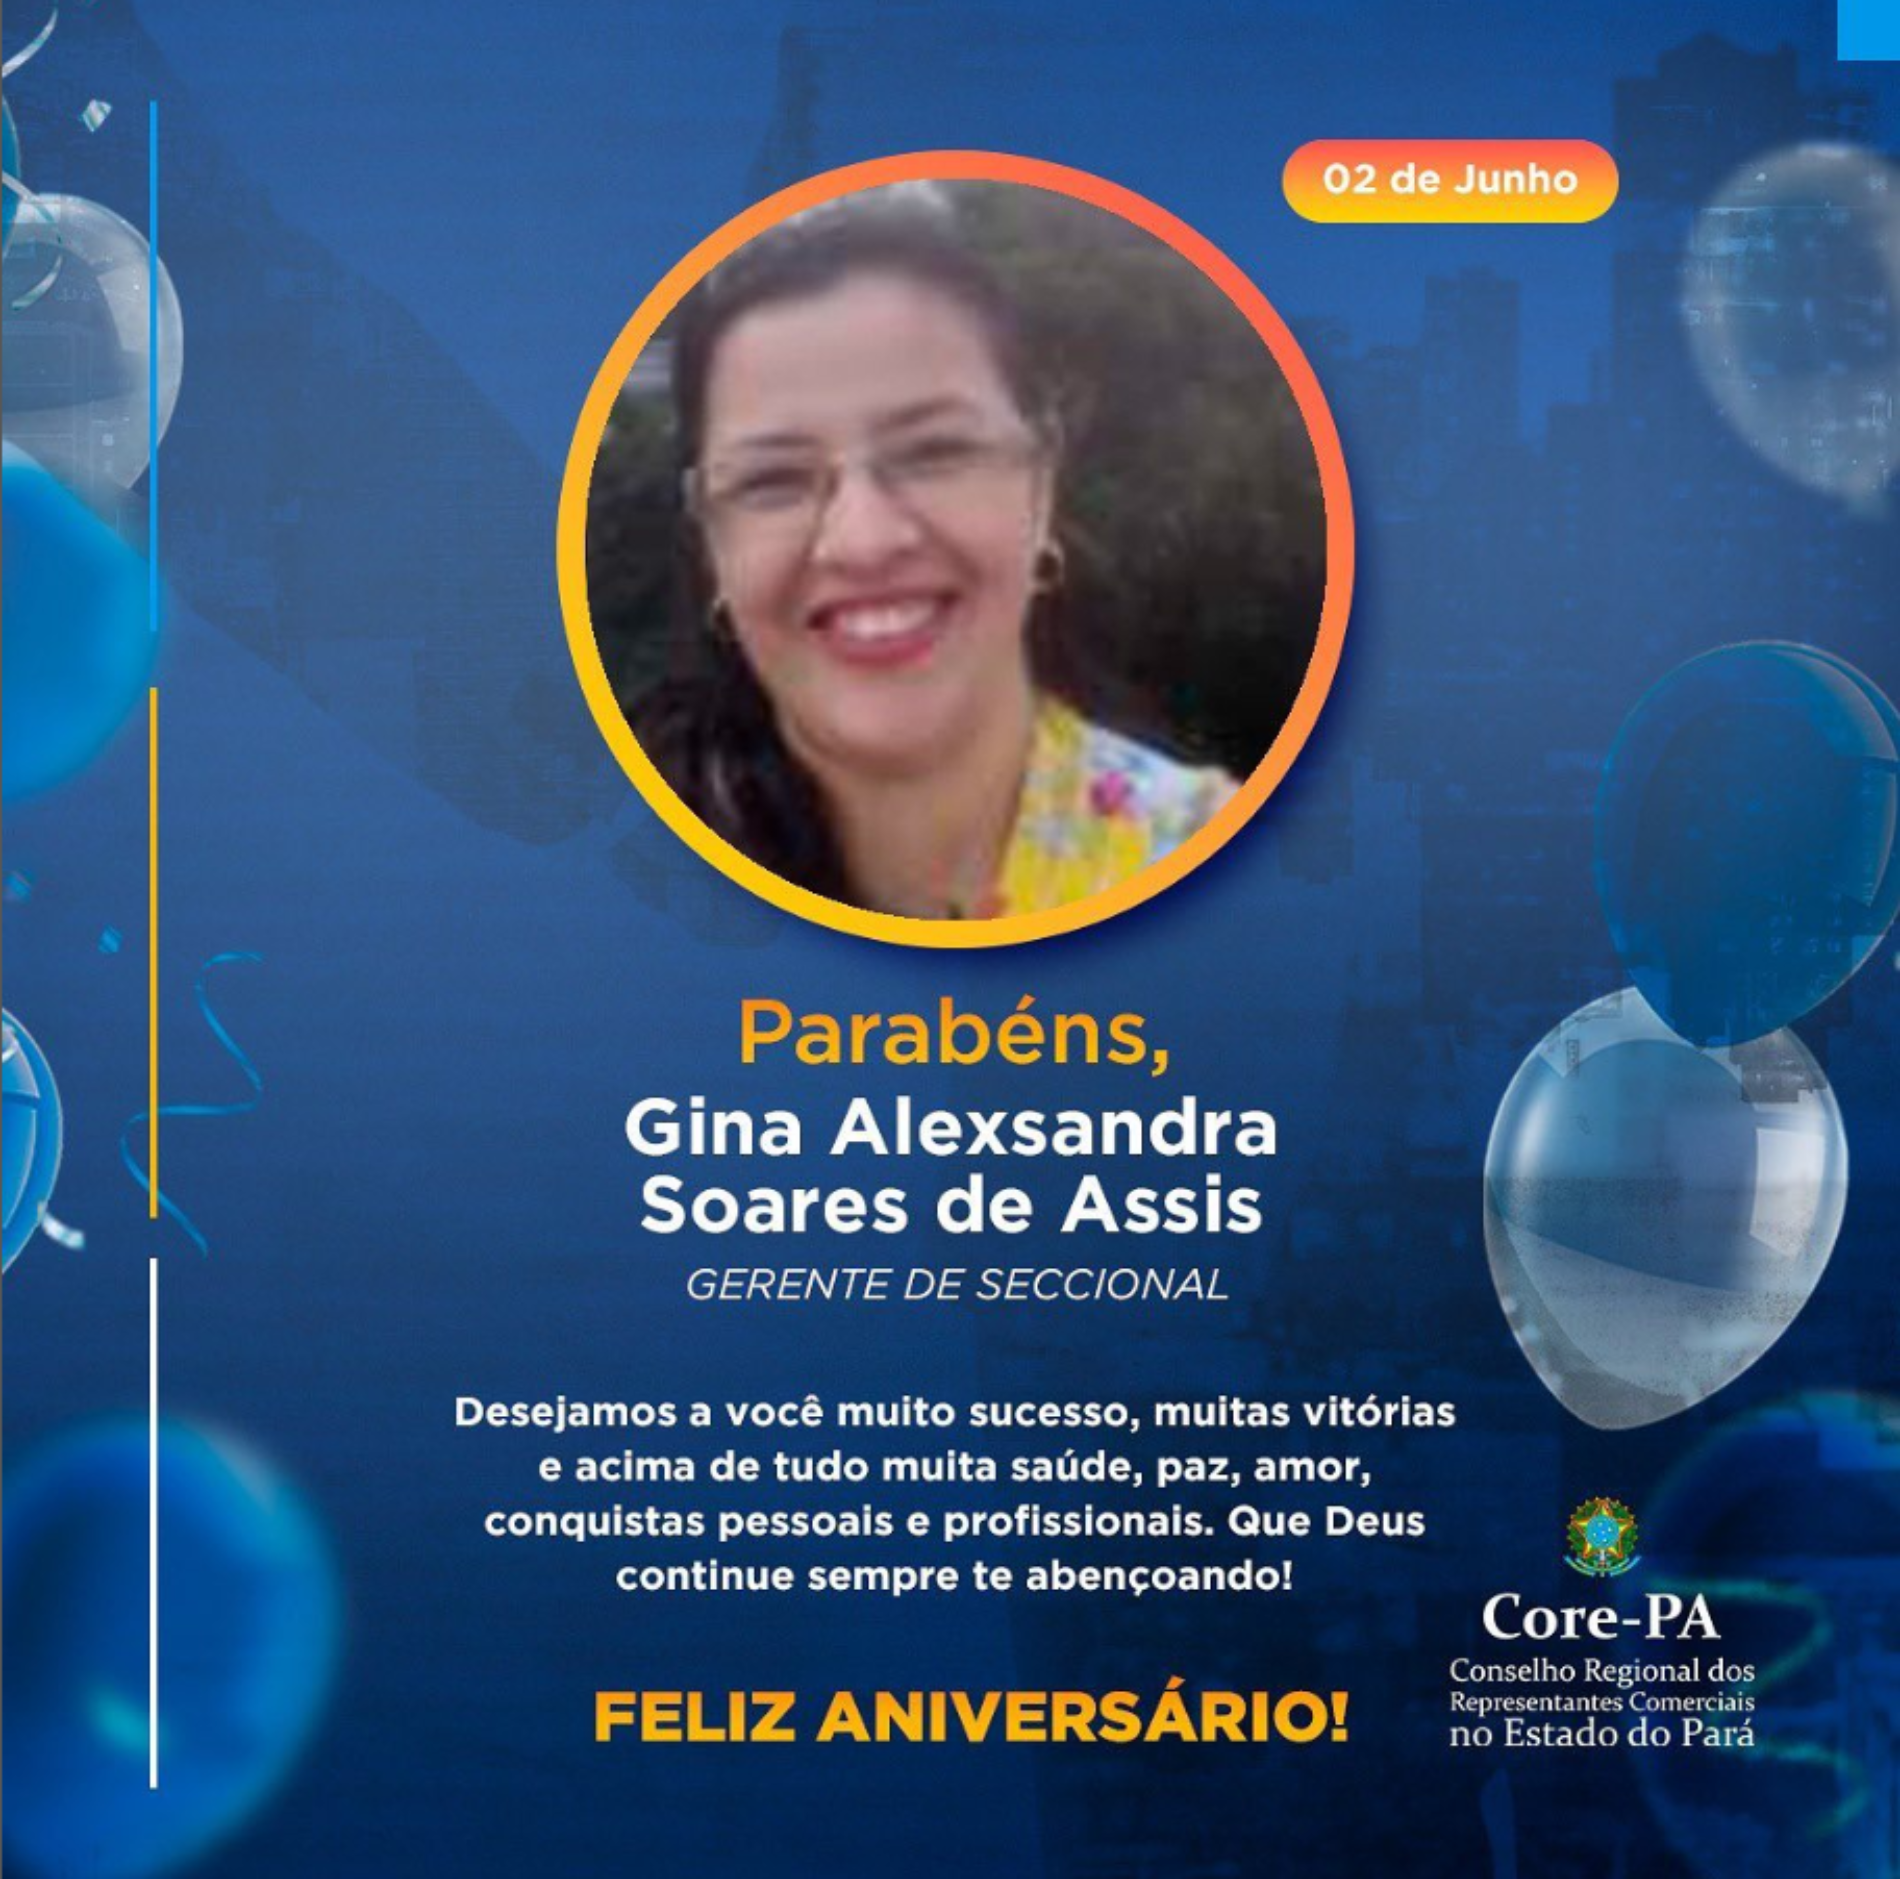 Parabéns Gina Alexsandra